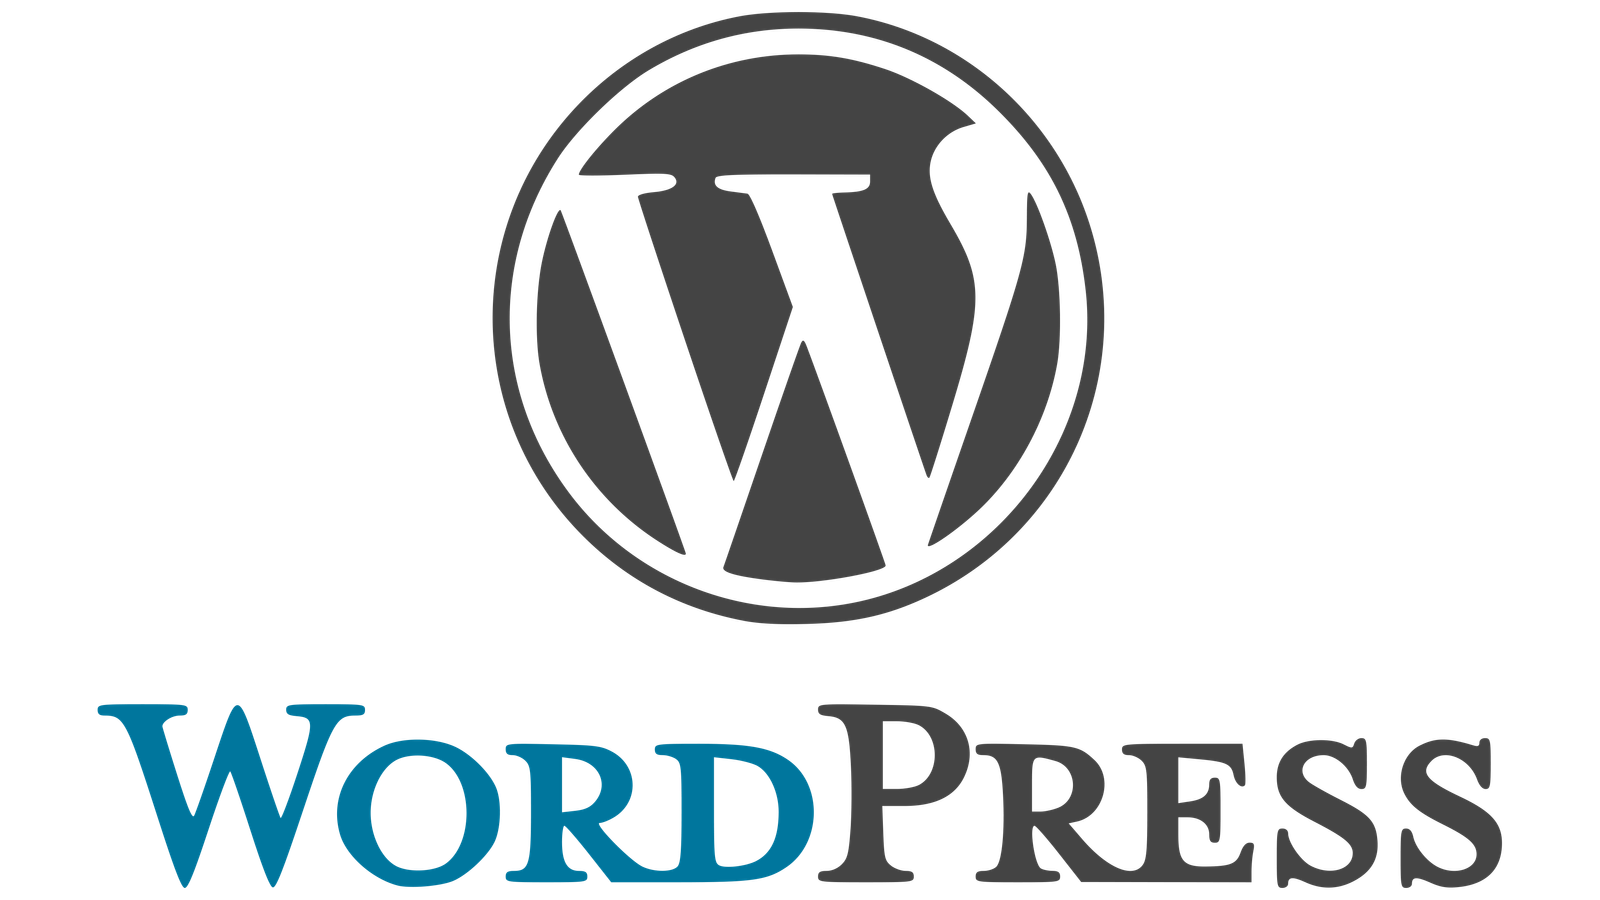 Das offizielle WordPress-Logo mit einem eleganten, schwarz-weißen 'W' in einem Kreis und dem vollständigen Wort 'WordPress' darunter in einer modernen serifenlosen Schriftart. Dieses Bild symbolisiert WordPress als das führende Content-Management-System für die Erstellung von Websites, bekannt für seine Flexibilität, Benutzerfreundlichkeit und starke Community-Unterstützung. Unverzichtbar für Webmaster und Unternehmen, die mit WordPress-Hosting-Diensten eine professionelle Webpräsenz aufbauen und pflegen möchten.